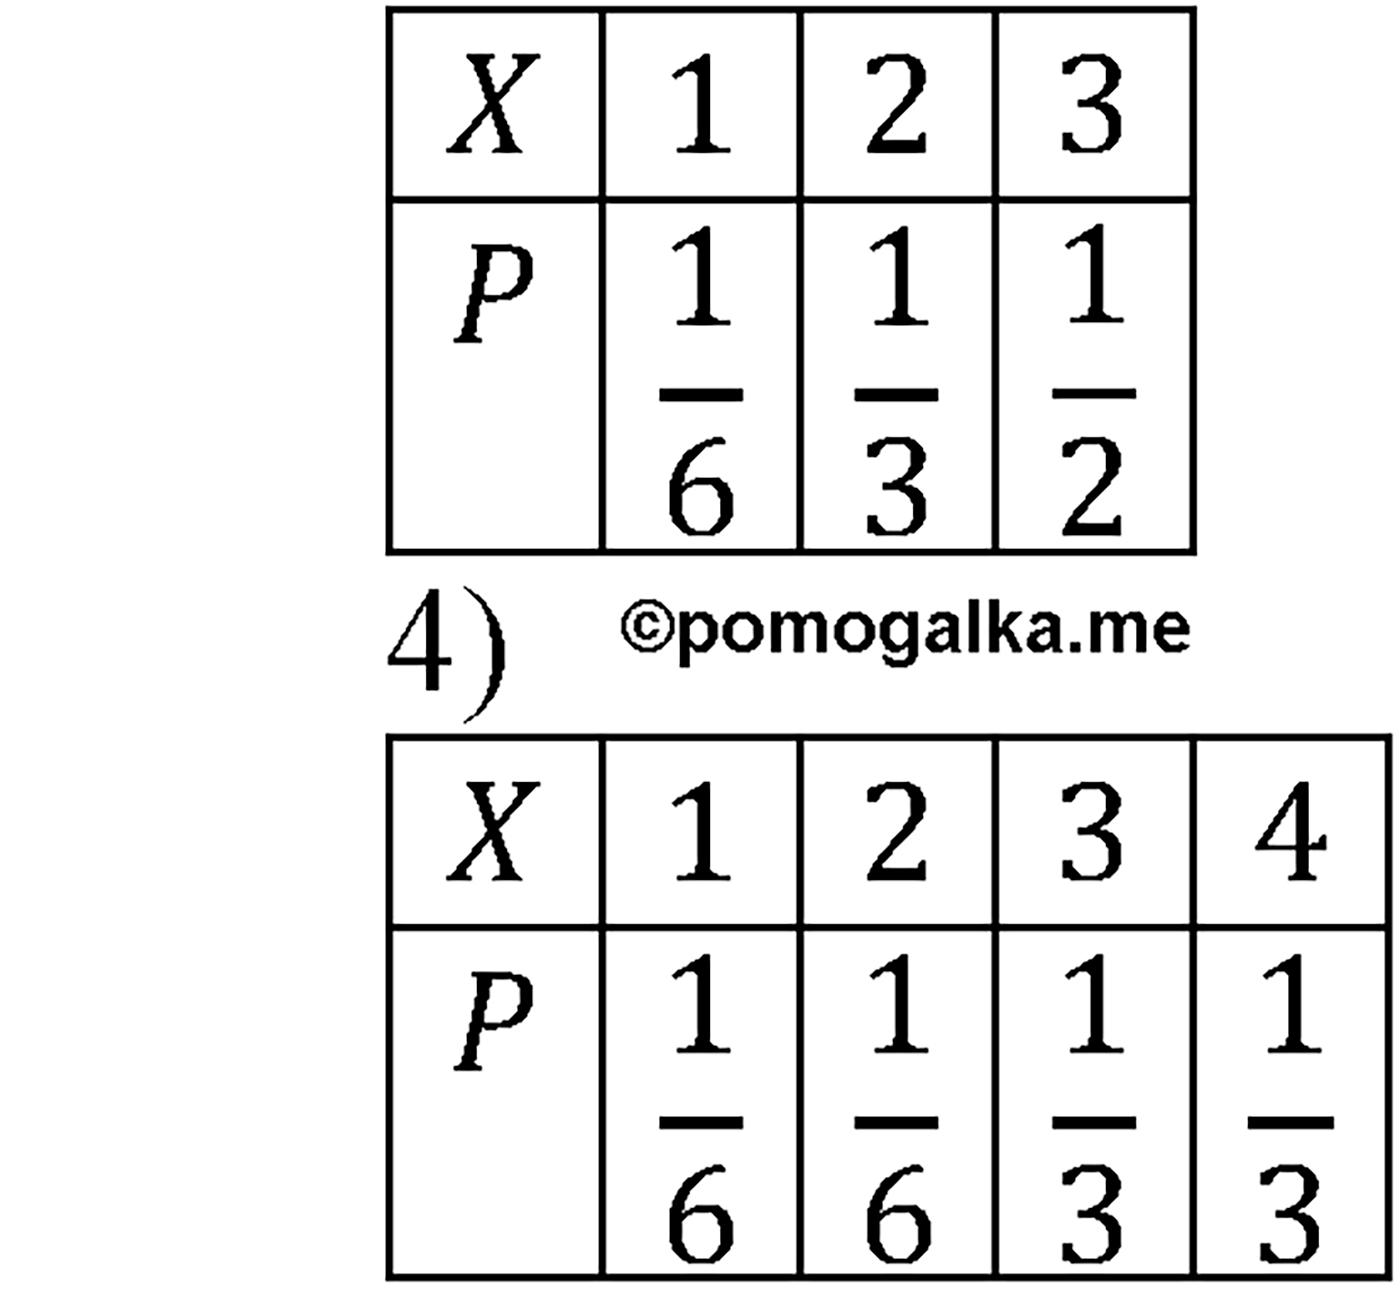 разбор задачи №1210 по алгебре за 10-11 класс из учебника Алимова, Колягина